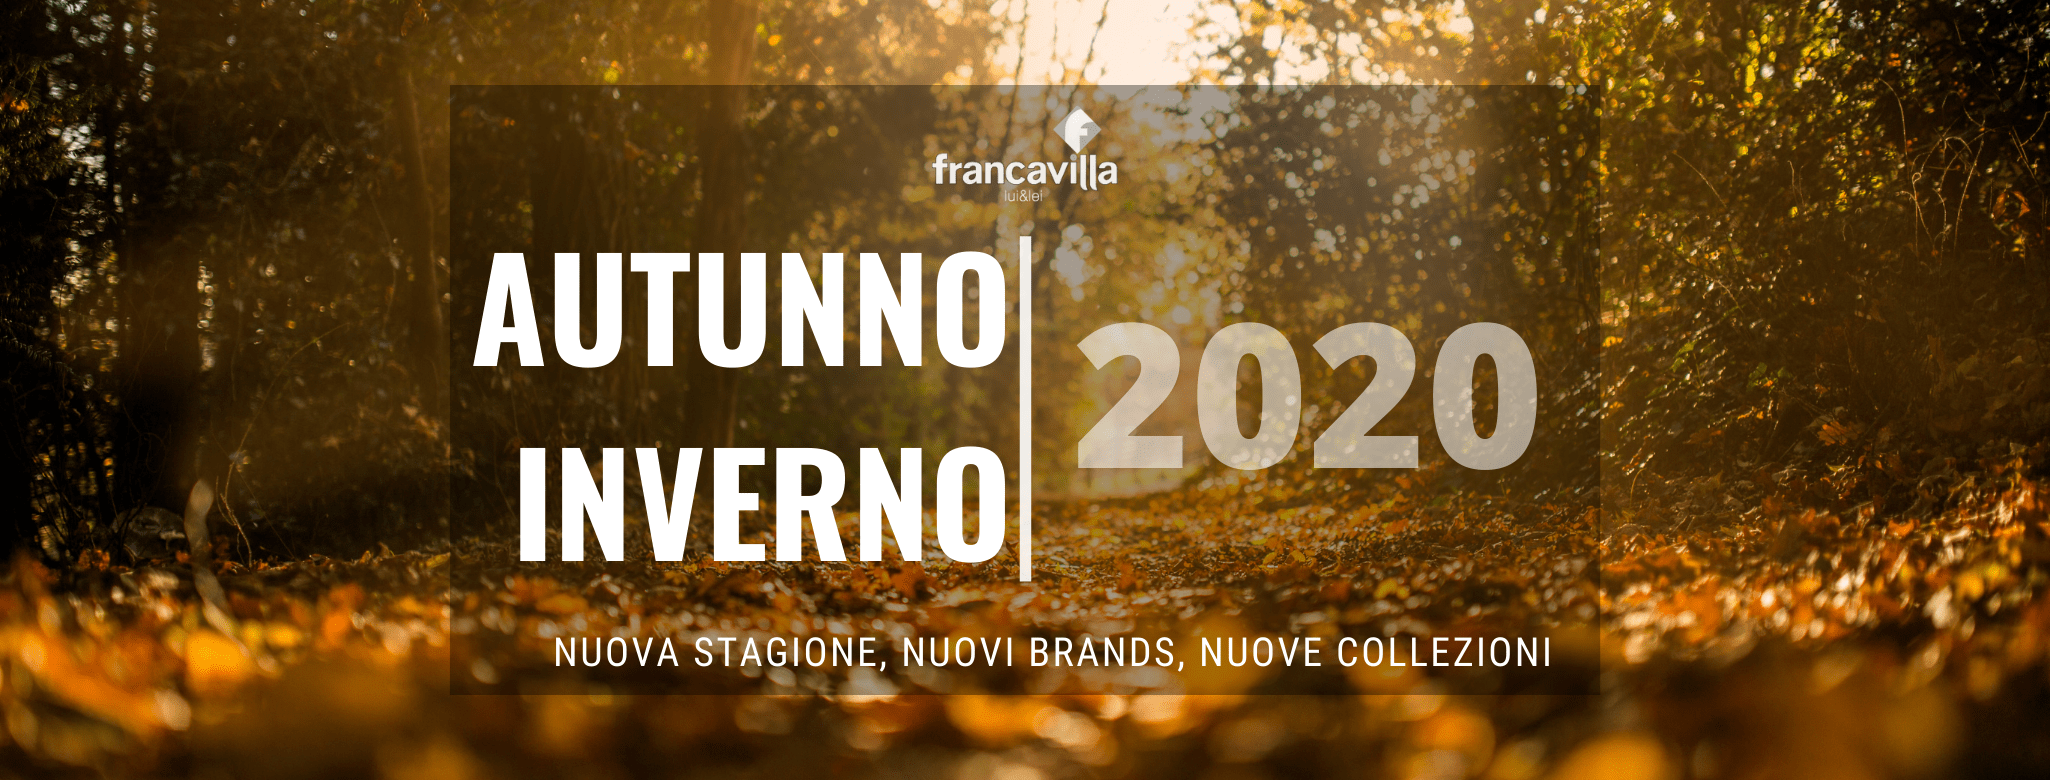 Le novità di Francavilla Moda Roma 2020-nuovastagione-nuovi-brands-nuove-collezioni